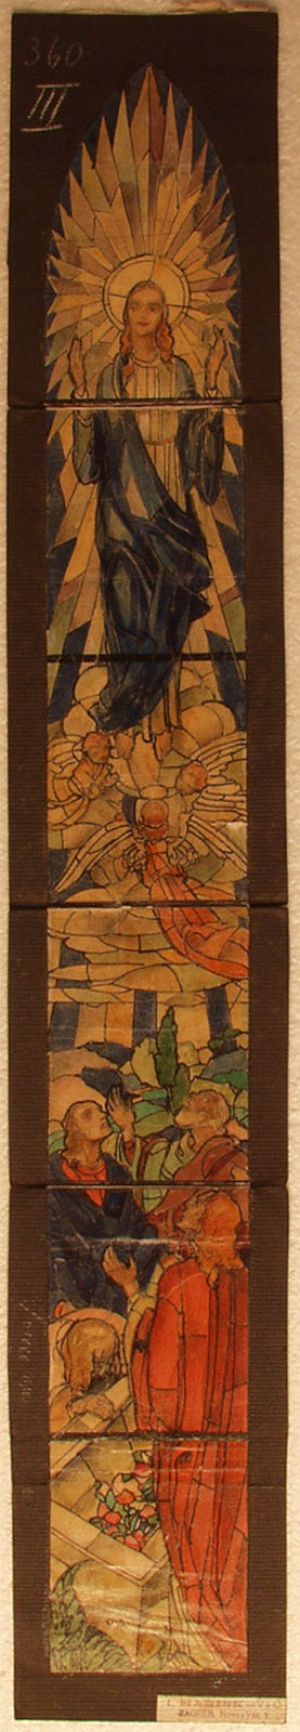 MUO-031488: Uznesenje Bogorodice: skica za vitraj